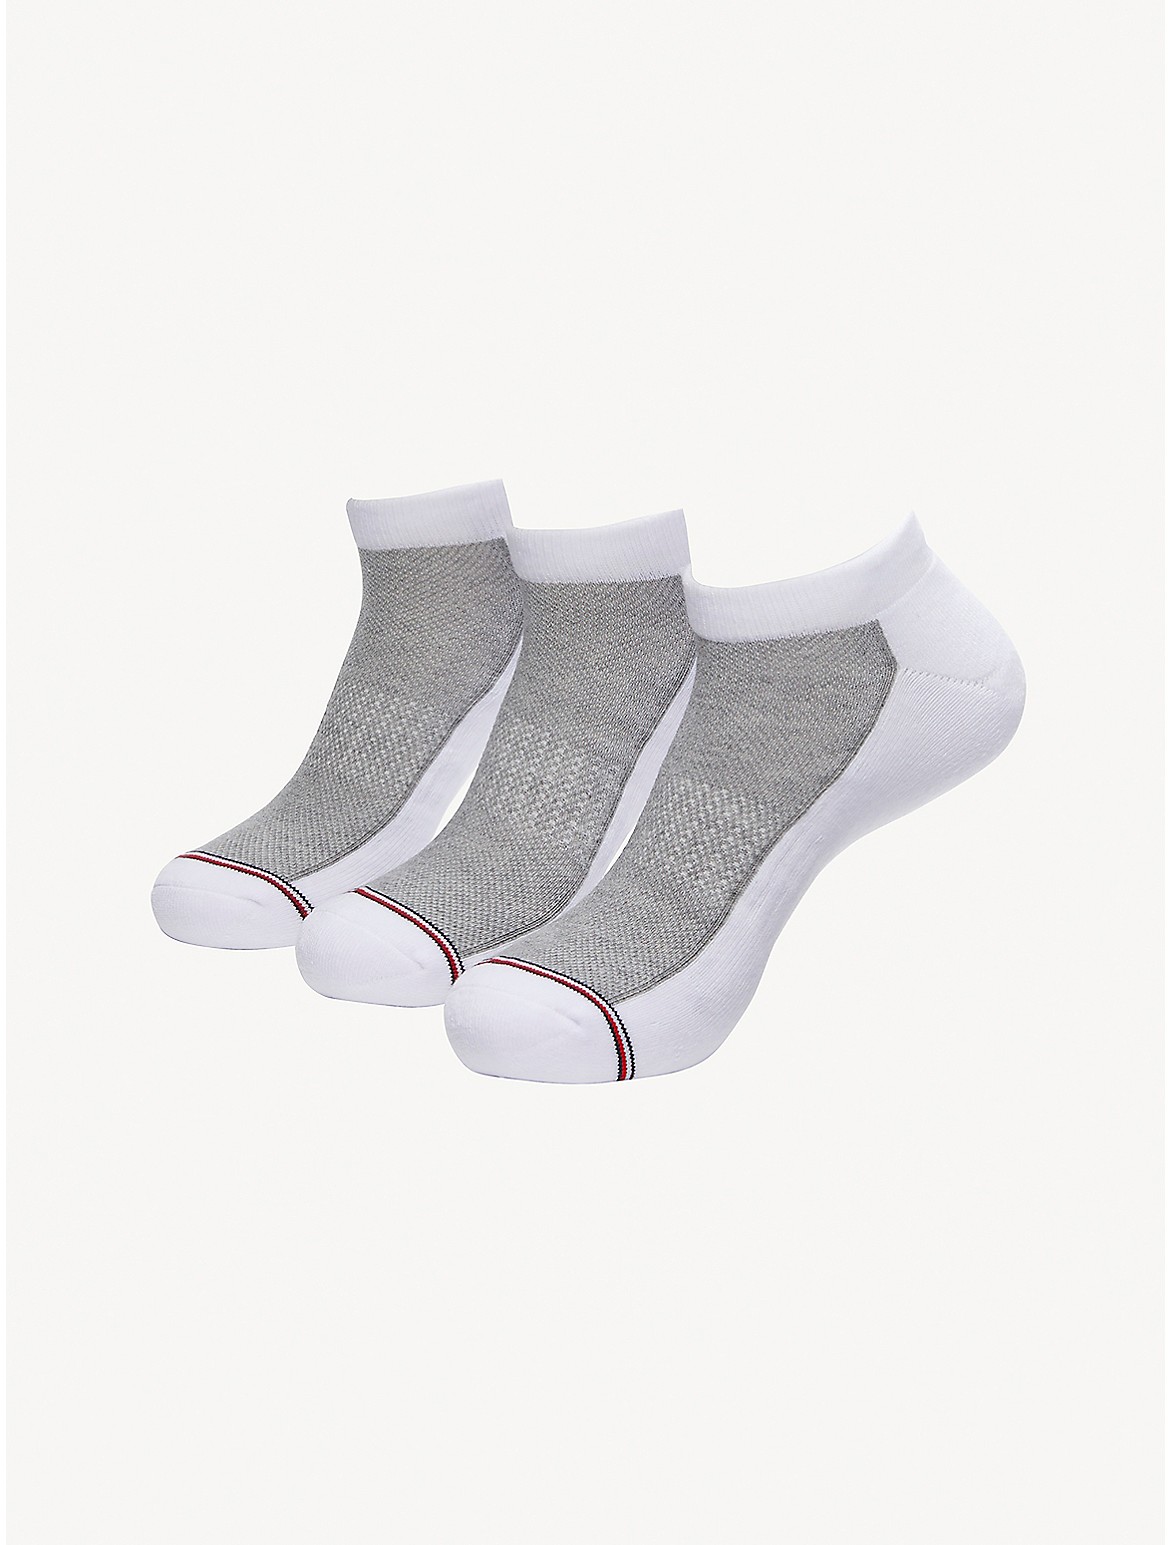 Tommy Hilfiger Men's Ankle Sock 3-Pack - White